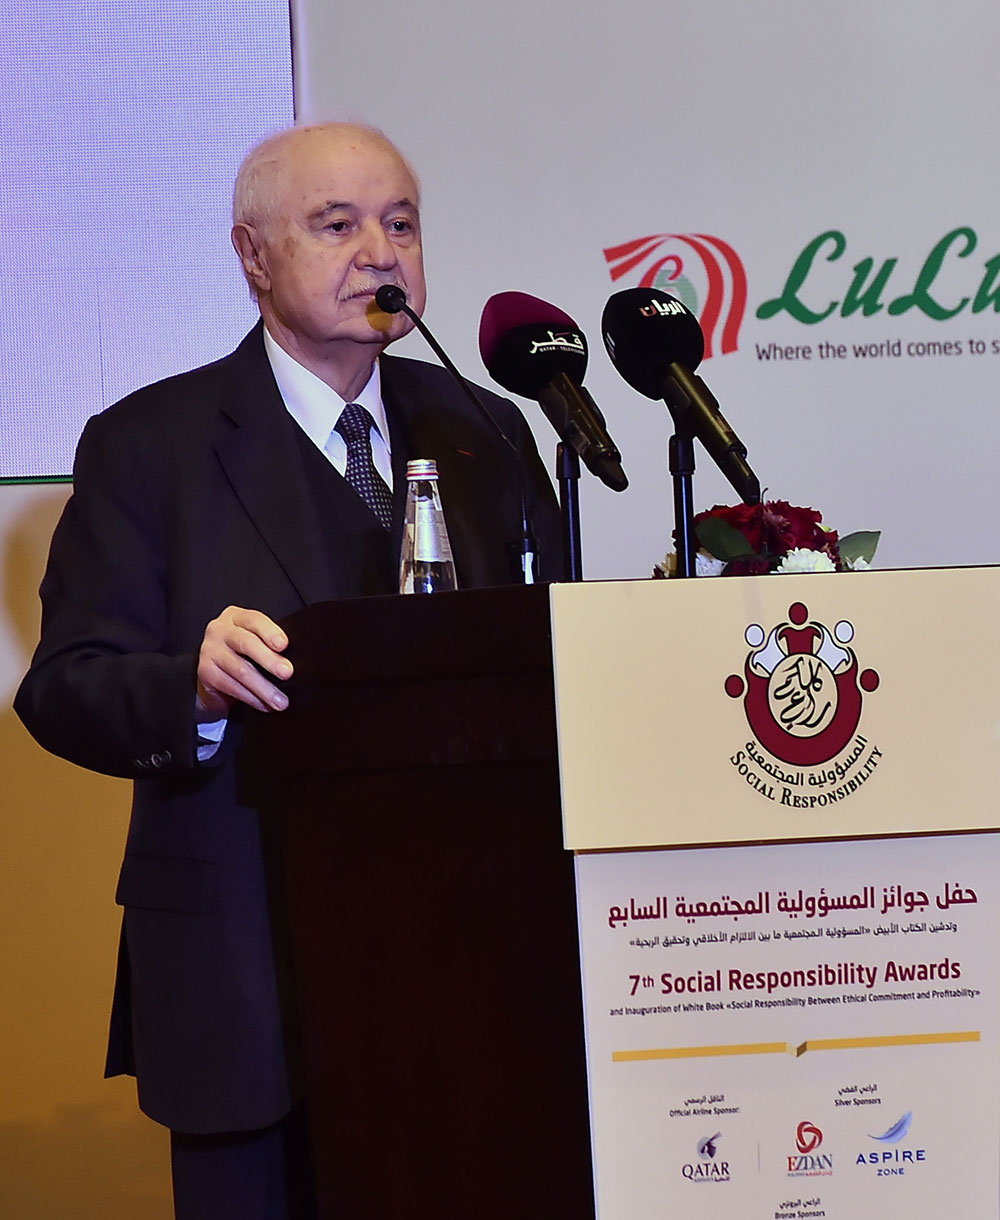 سعادة الدكتور طلال أبوغزاله المتحدث الرئيسي في حفل جوائز المسؤولية المجتمعية السابع